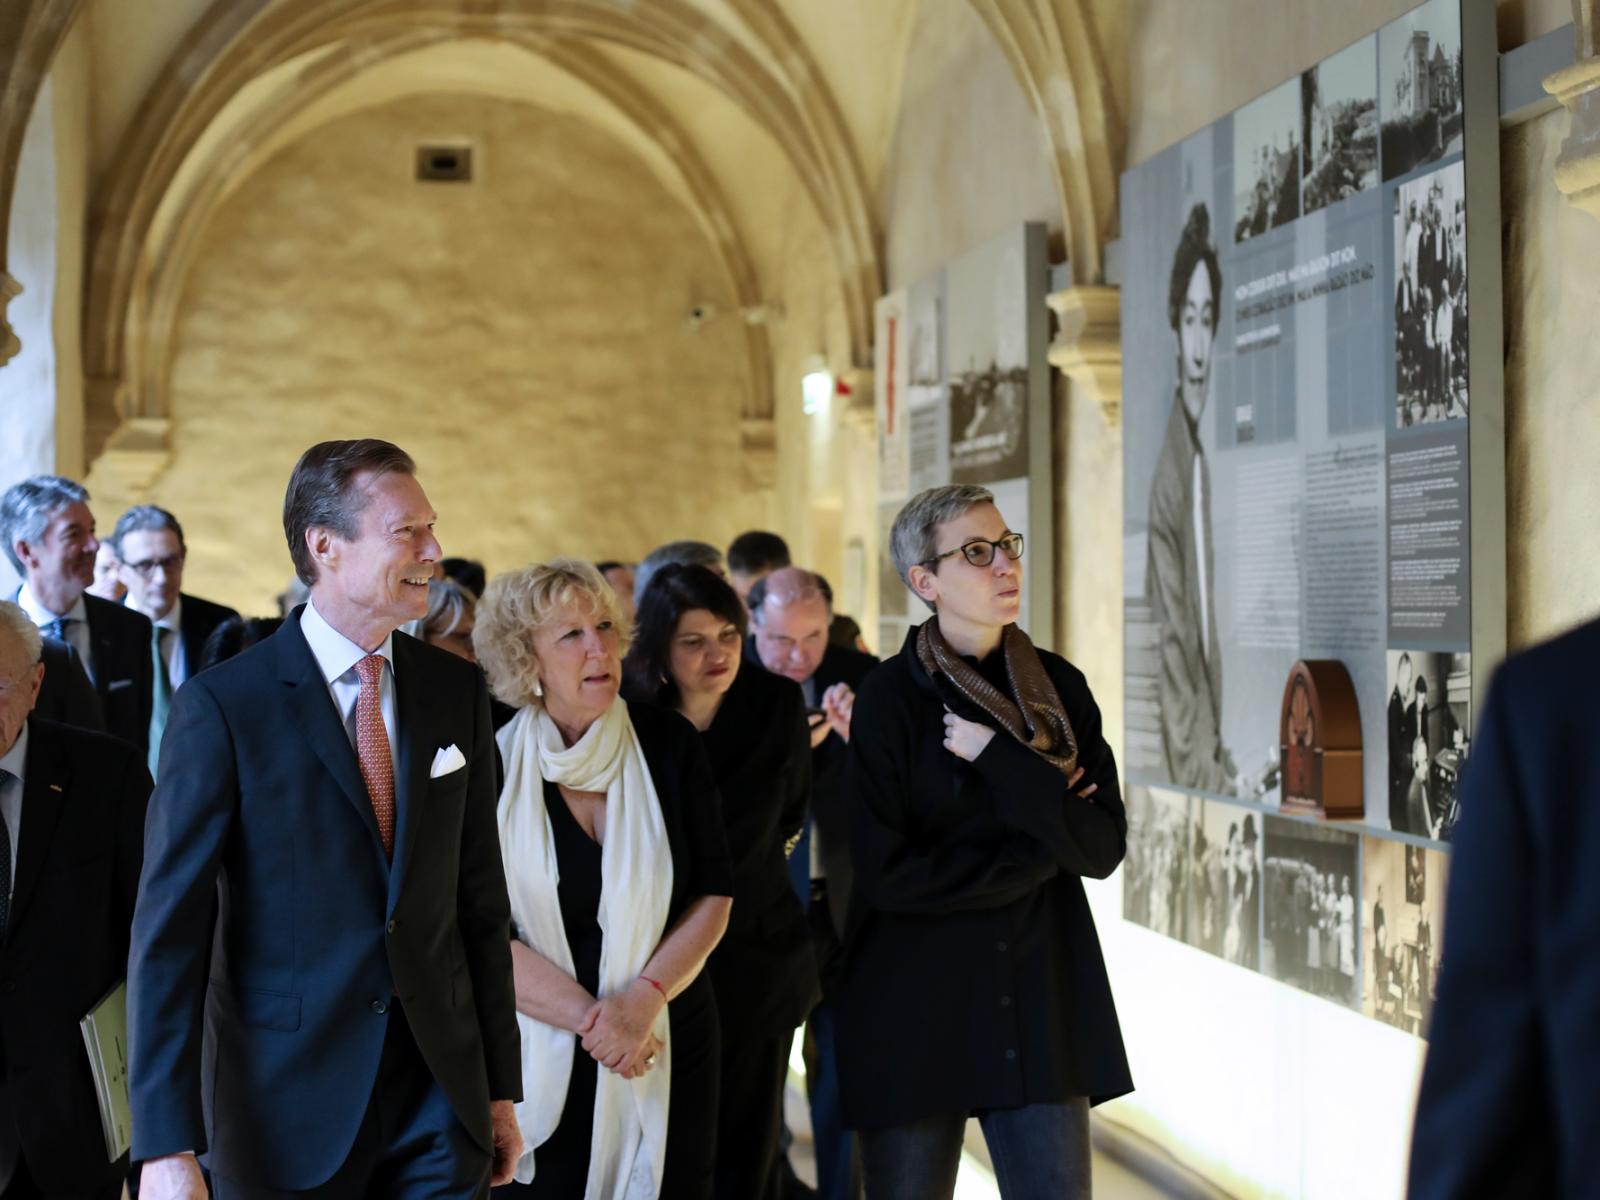 Visite de l'exposition "Luxembourg & Portugal"